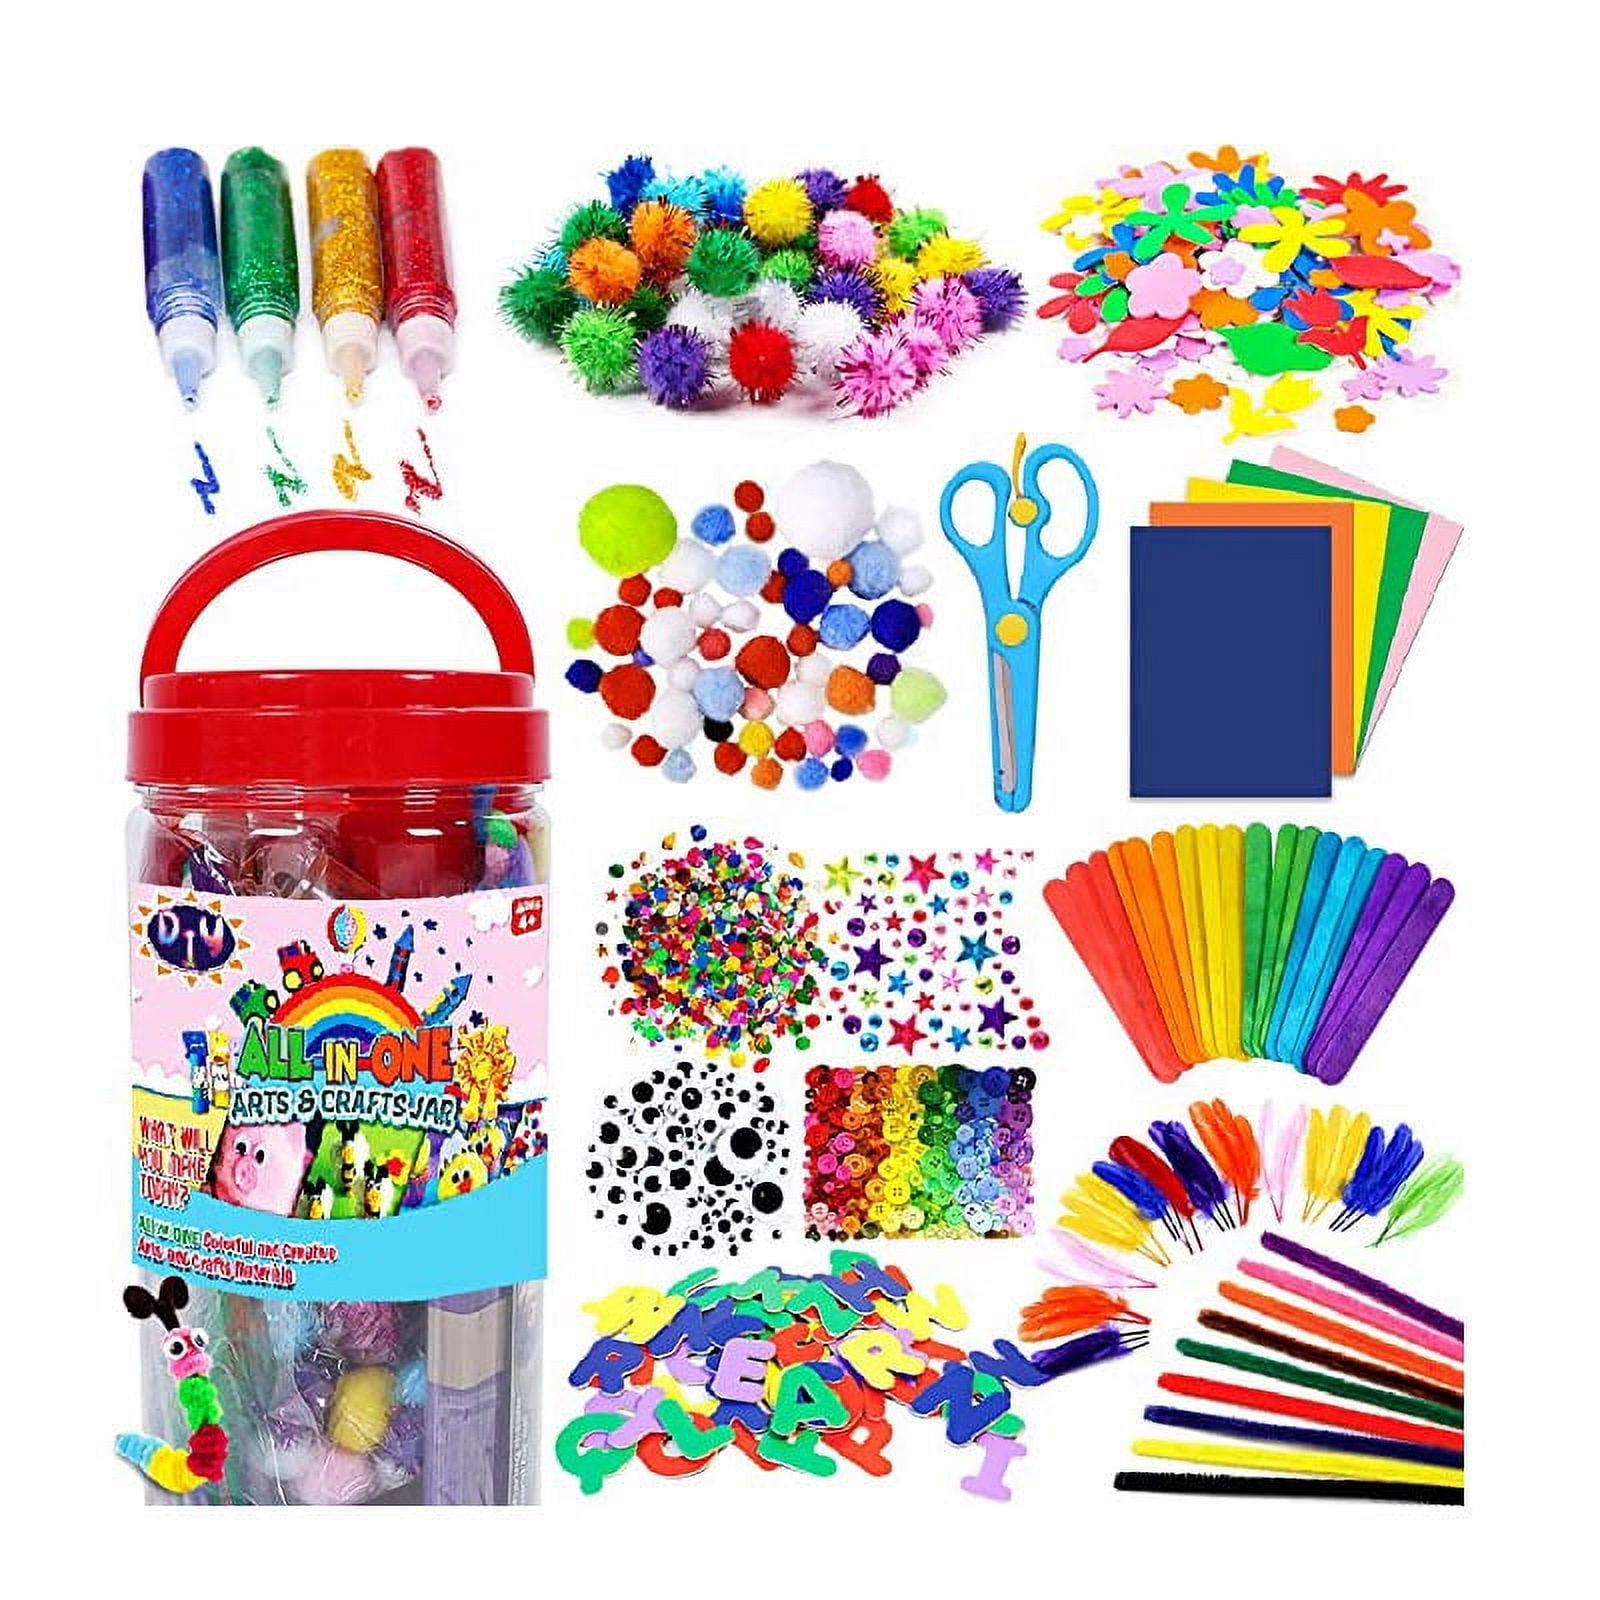 Essential Art Supplies for Kids - WeHaveKids